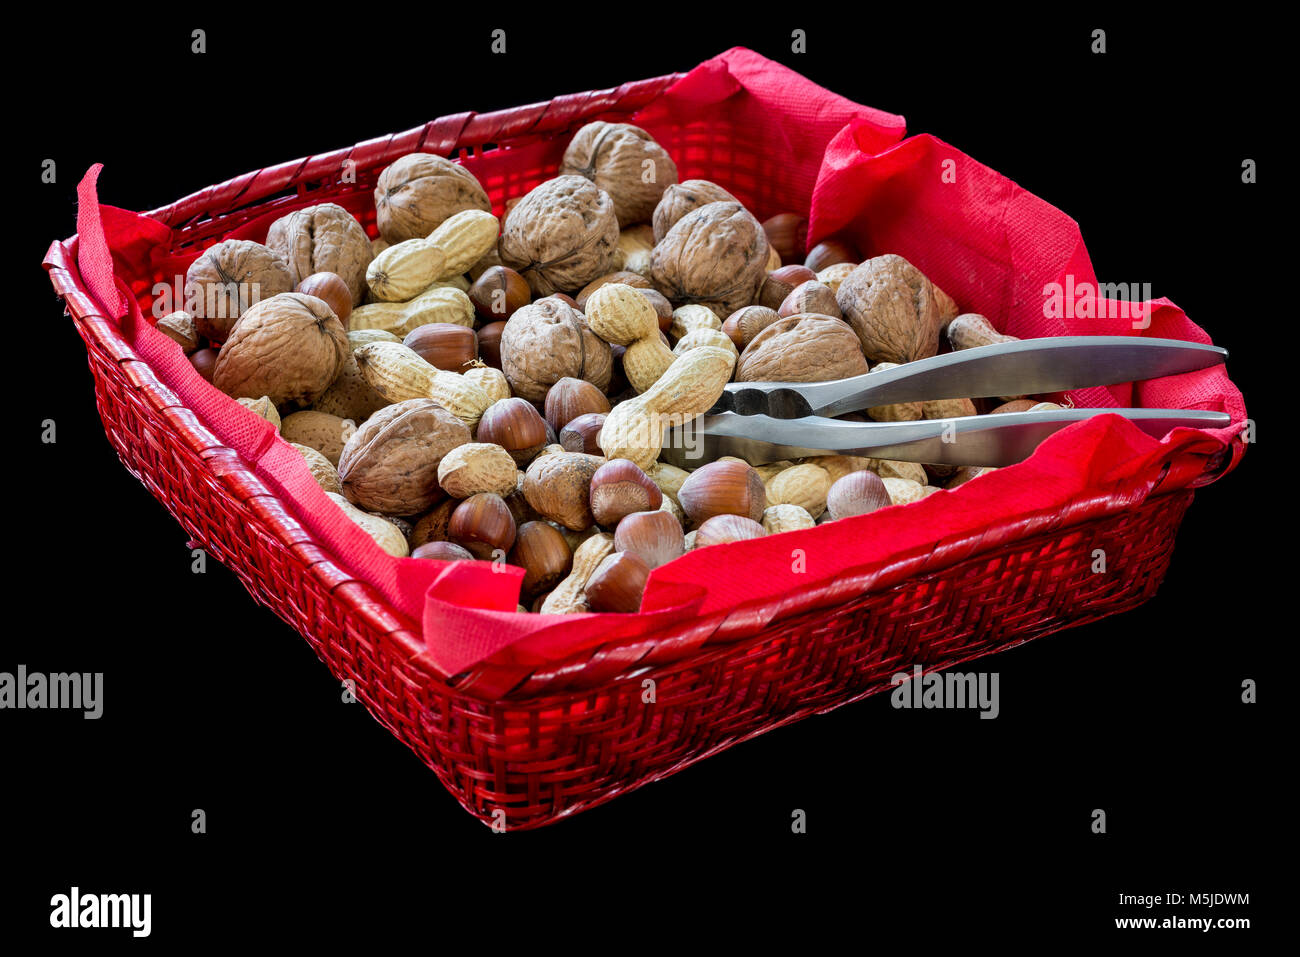 Panier en osier rouge avec des fruits secs, noisettes, noix, amandes, arachides et un casse-noix sur fond noir Banque D'Images